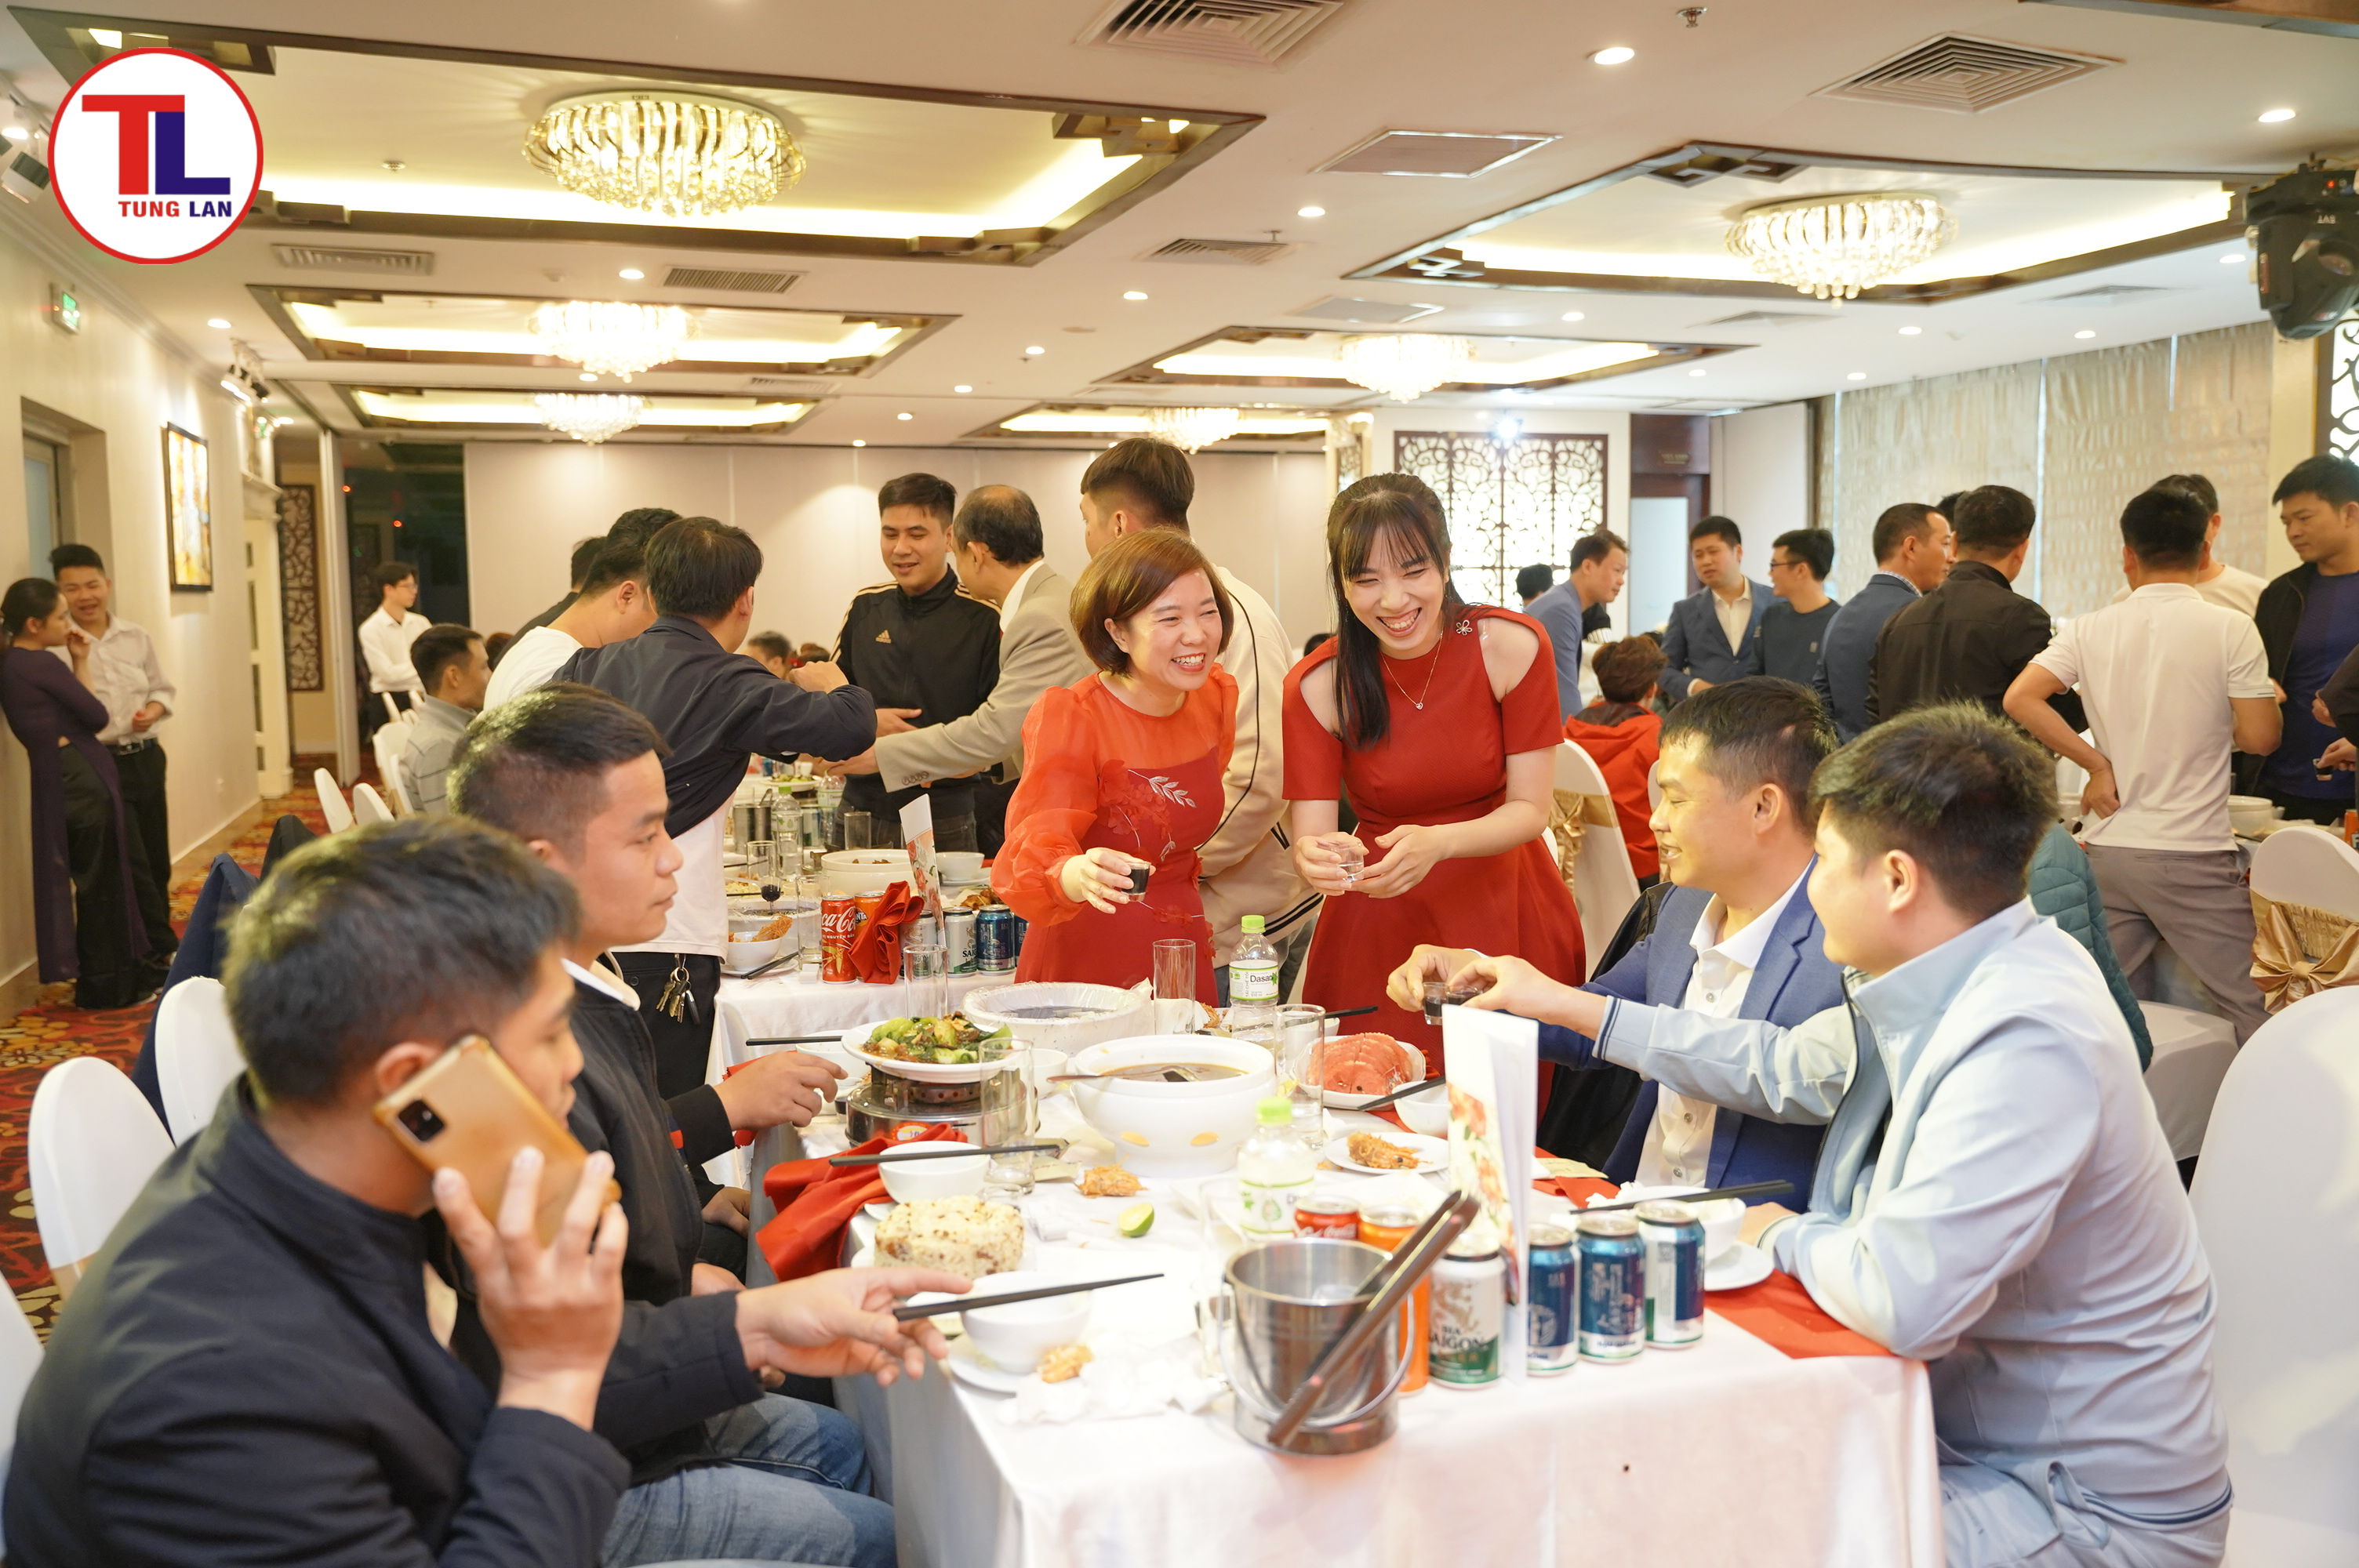 Tùng Lan tổ chức một buổi tiệc nhỏ nhằm tri ân khách hàng đã đồng hành cùng Tùng Lan, mời những khách hàng thân thiết cùng chung vui nhân dịp đầu năm mới.